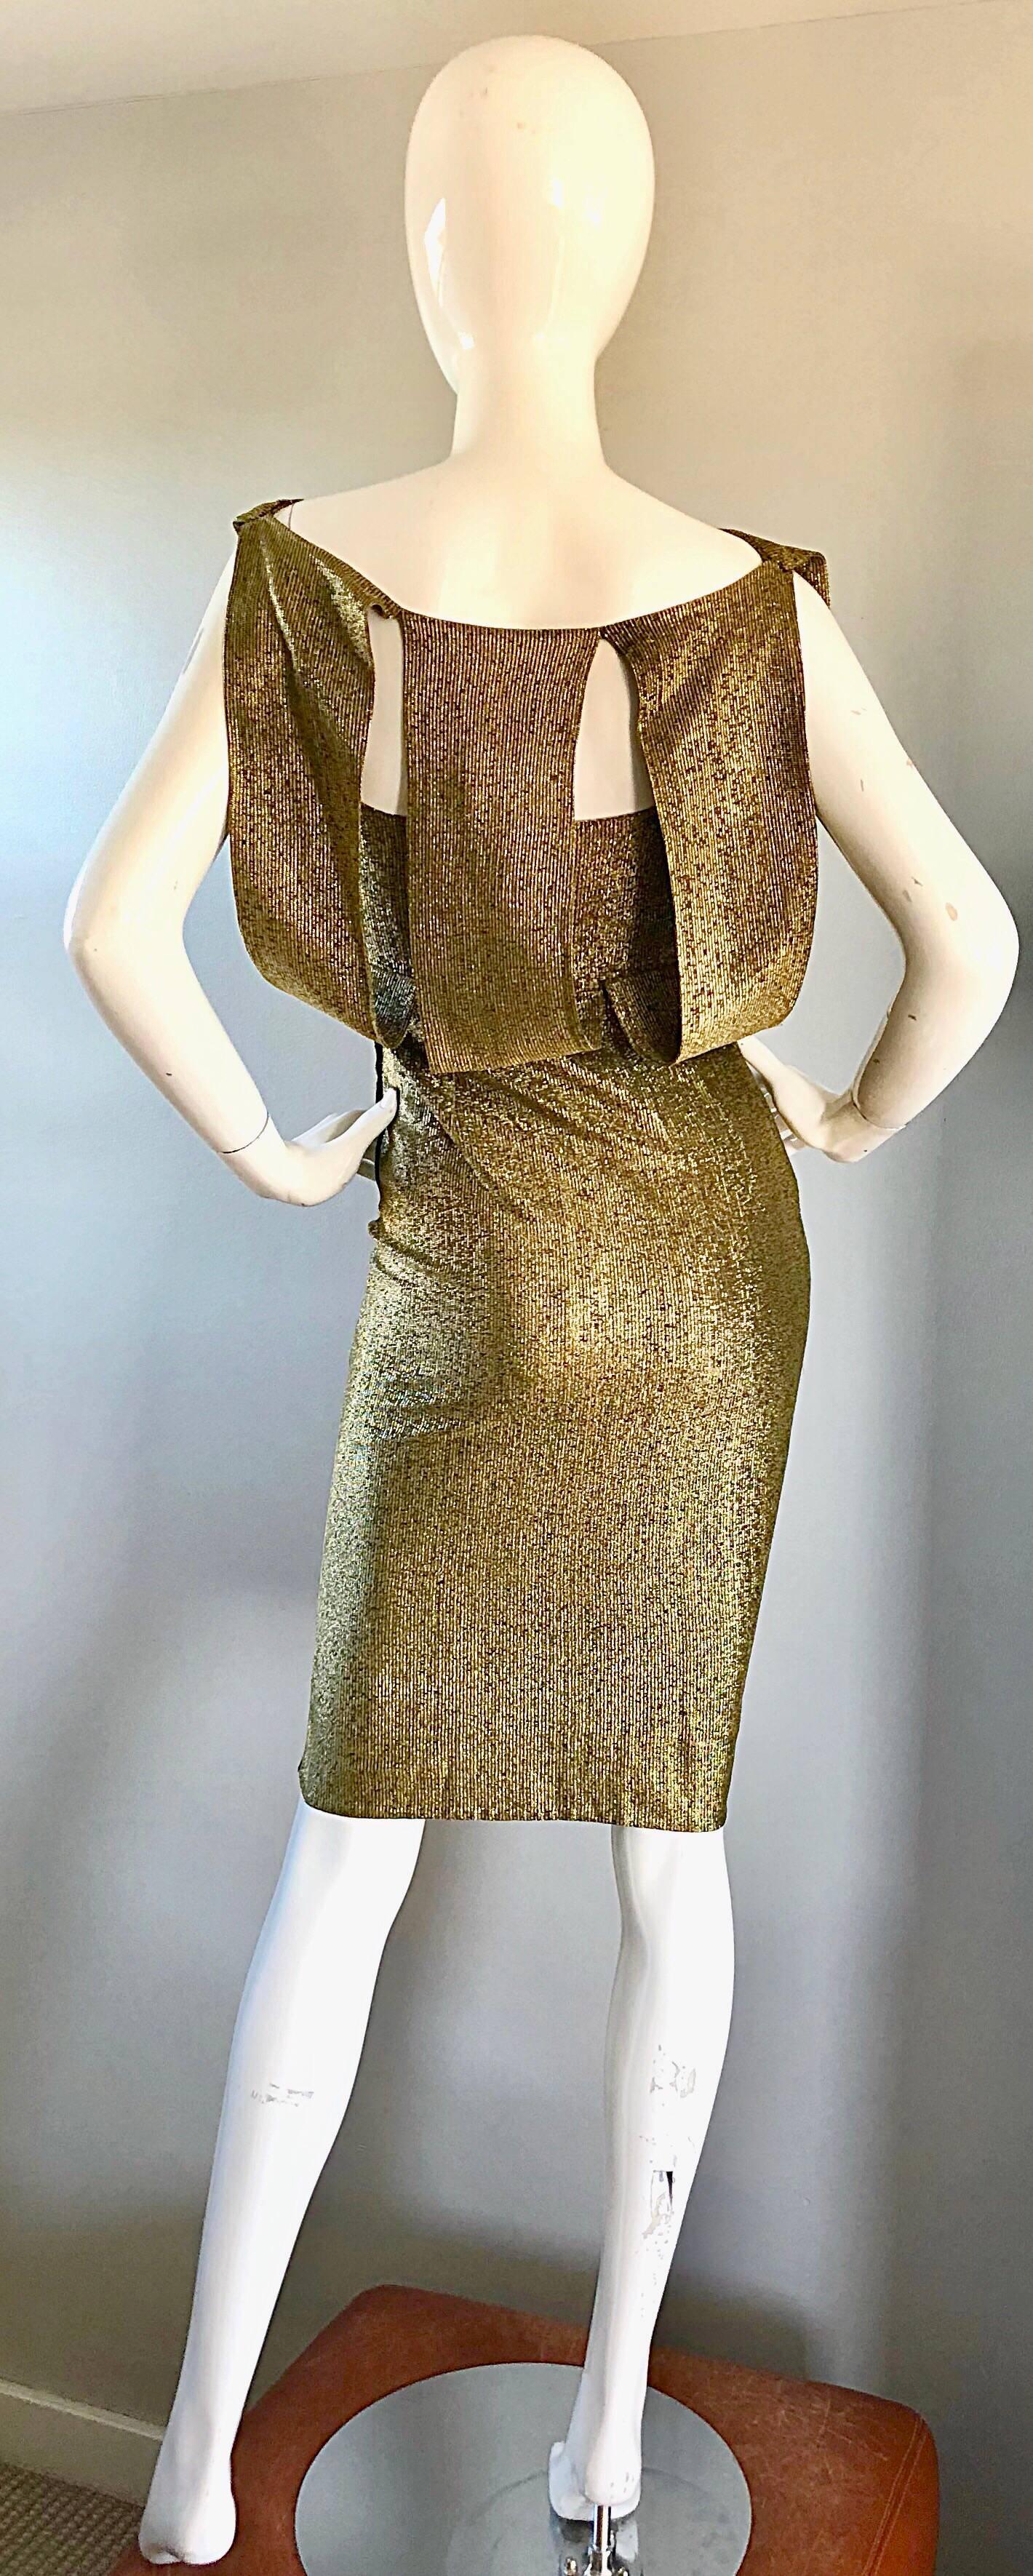 Magnifique robe demi-couture en soie métallisée dorée Avant Garde des années 1950 ! Coupe ajustée. Les découpes dans le dos révèlent juste ce qu'il faut de peau. Lignes dramatiques sans manches. Fermeture à glissière cachée sur le côté avec